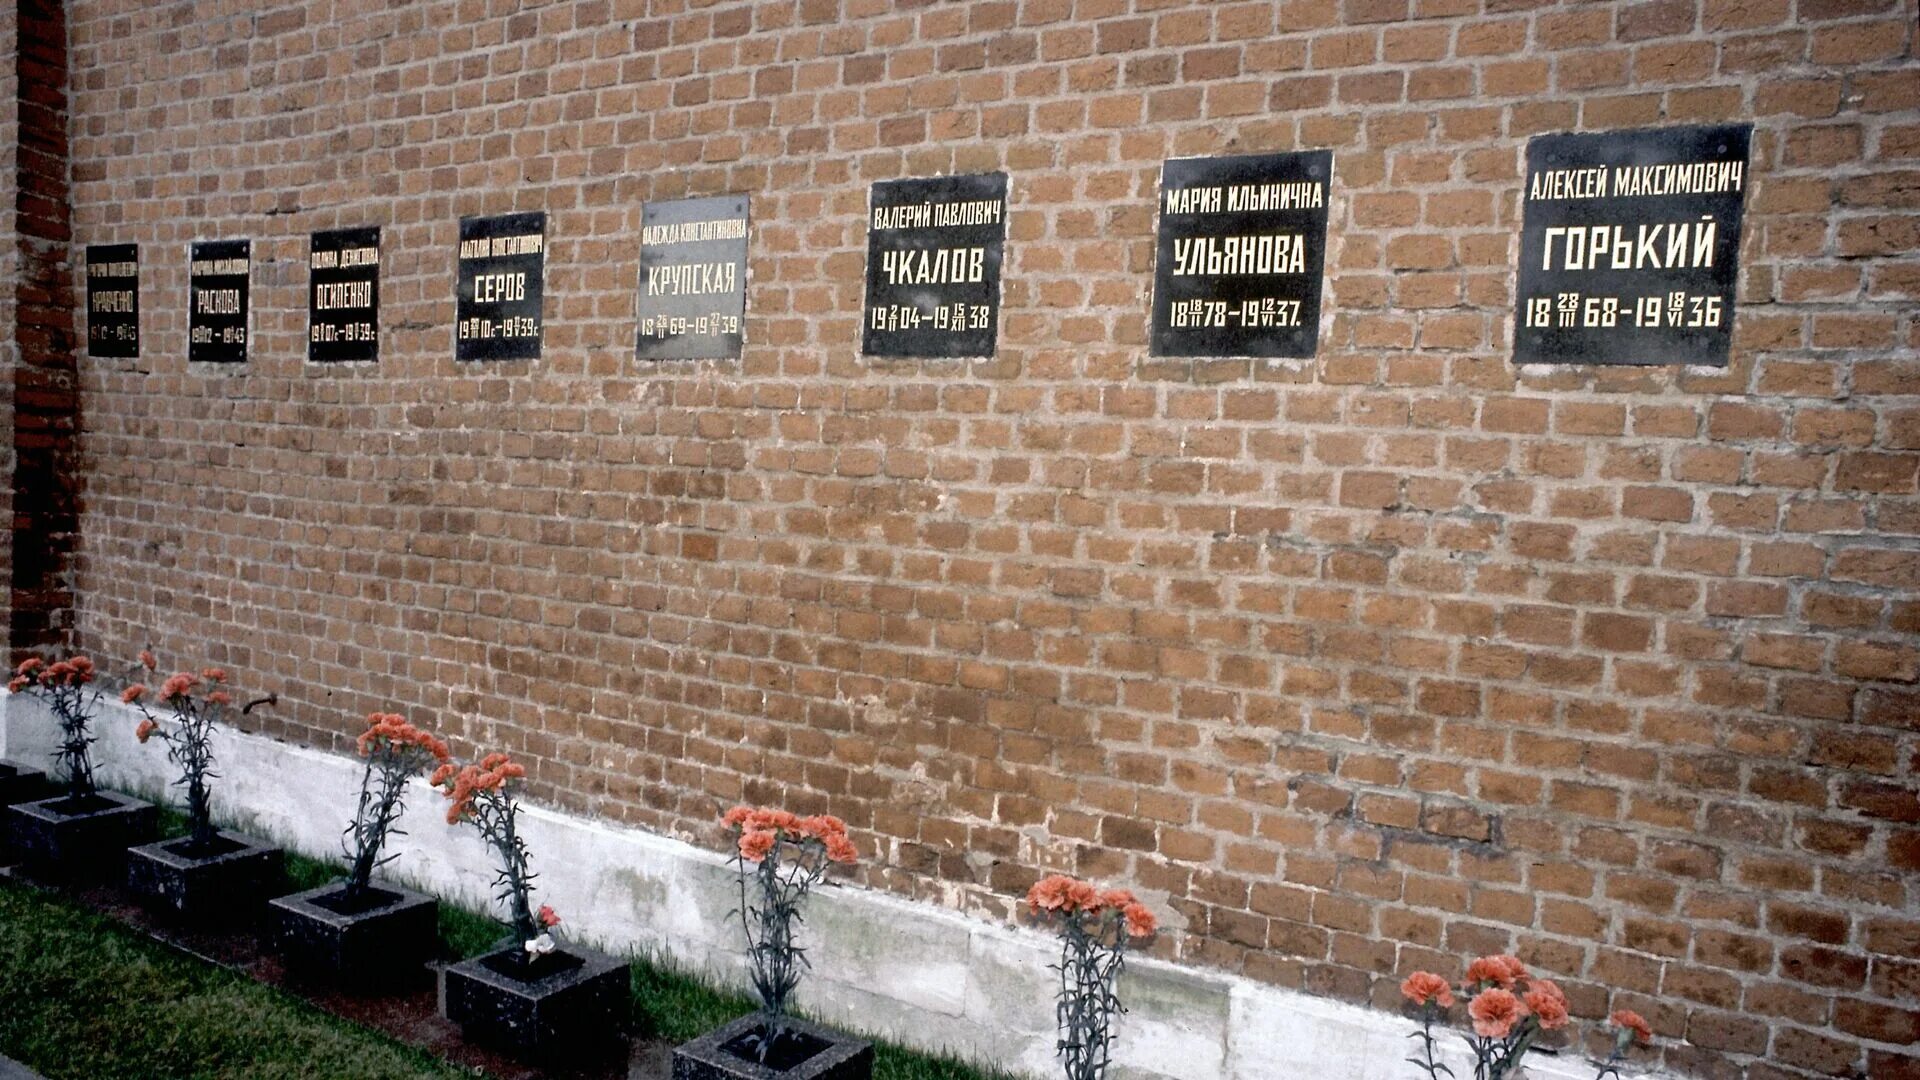 Похоронен форум. Некрополь у кремлёвской стены. Колумбарий в кремлевской стене. Никрополь кремлёвской стены.